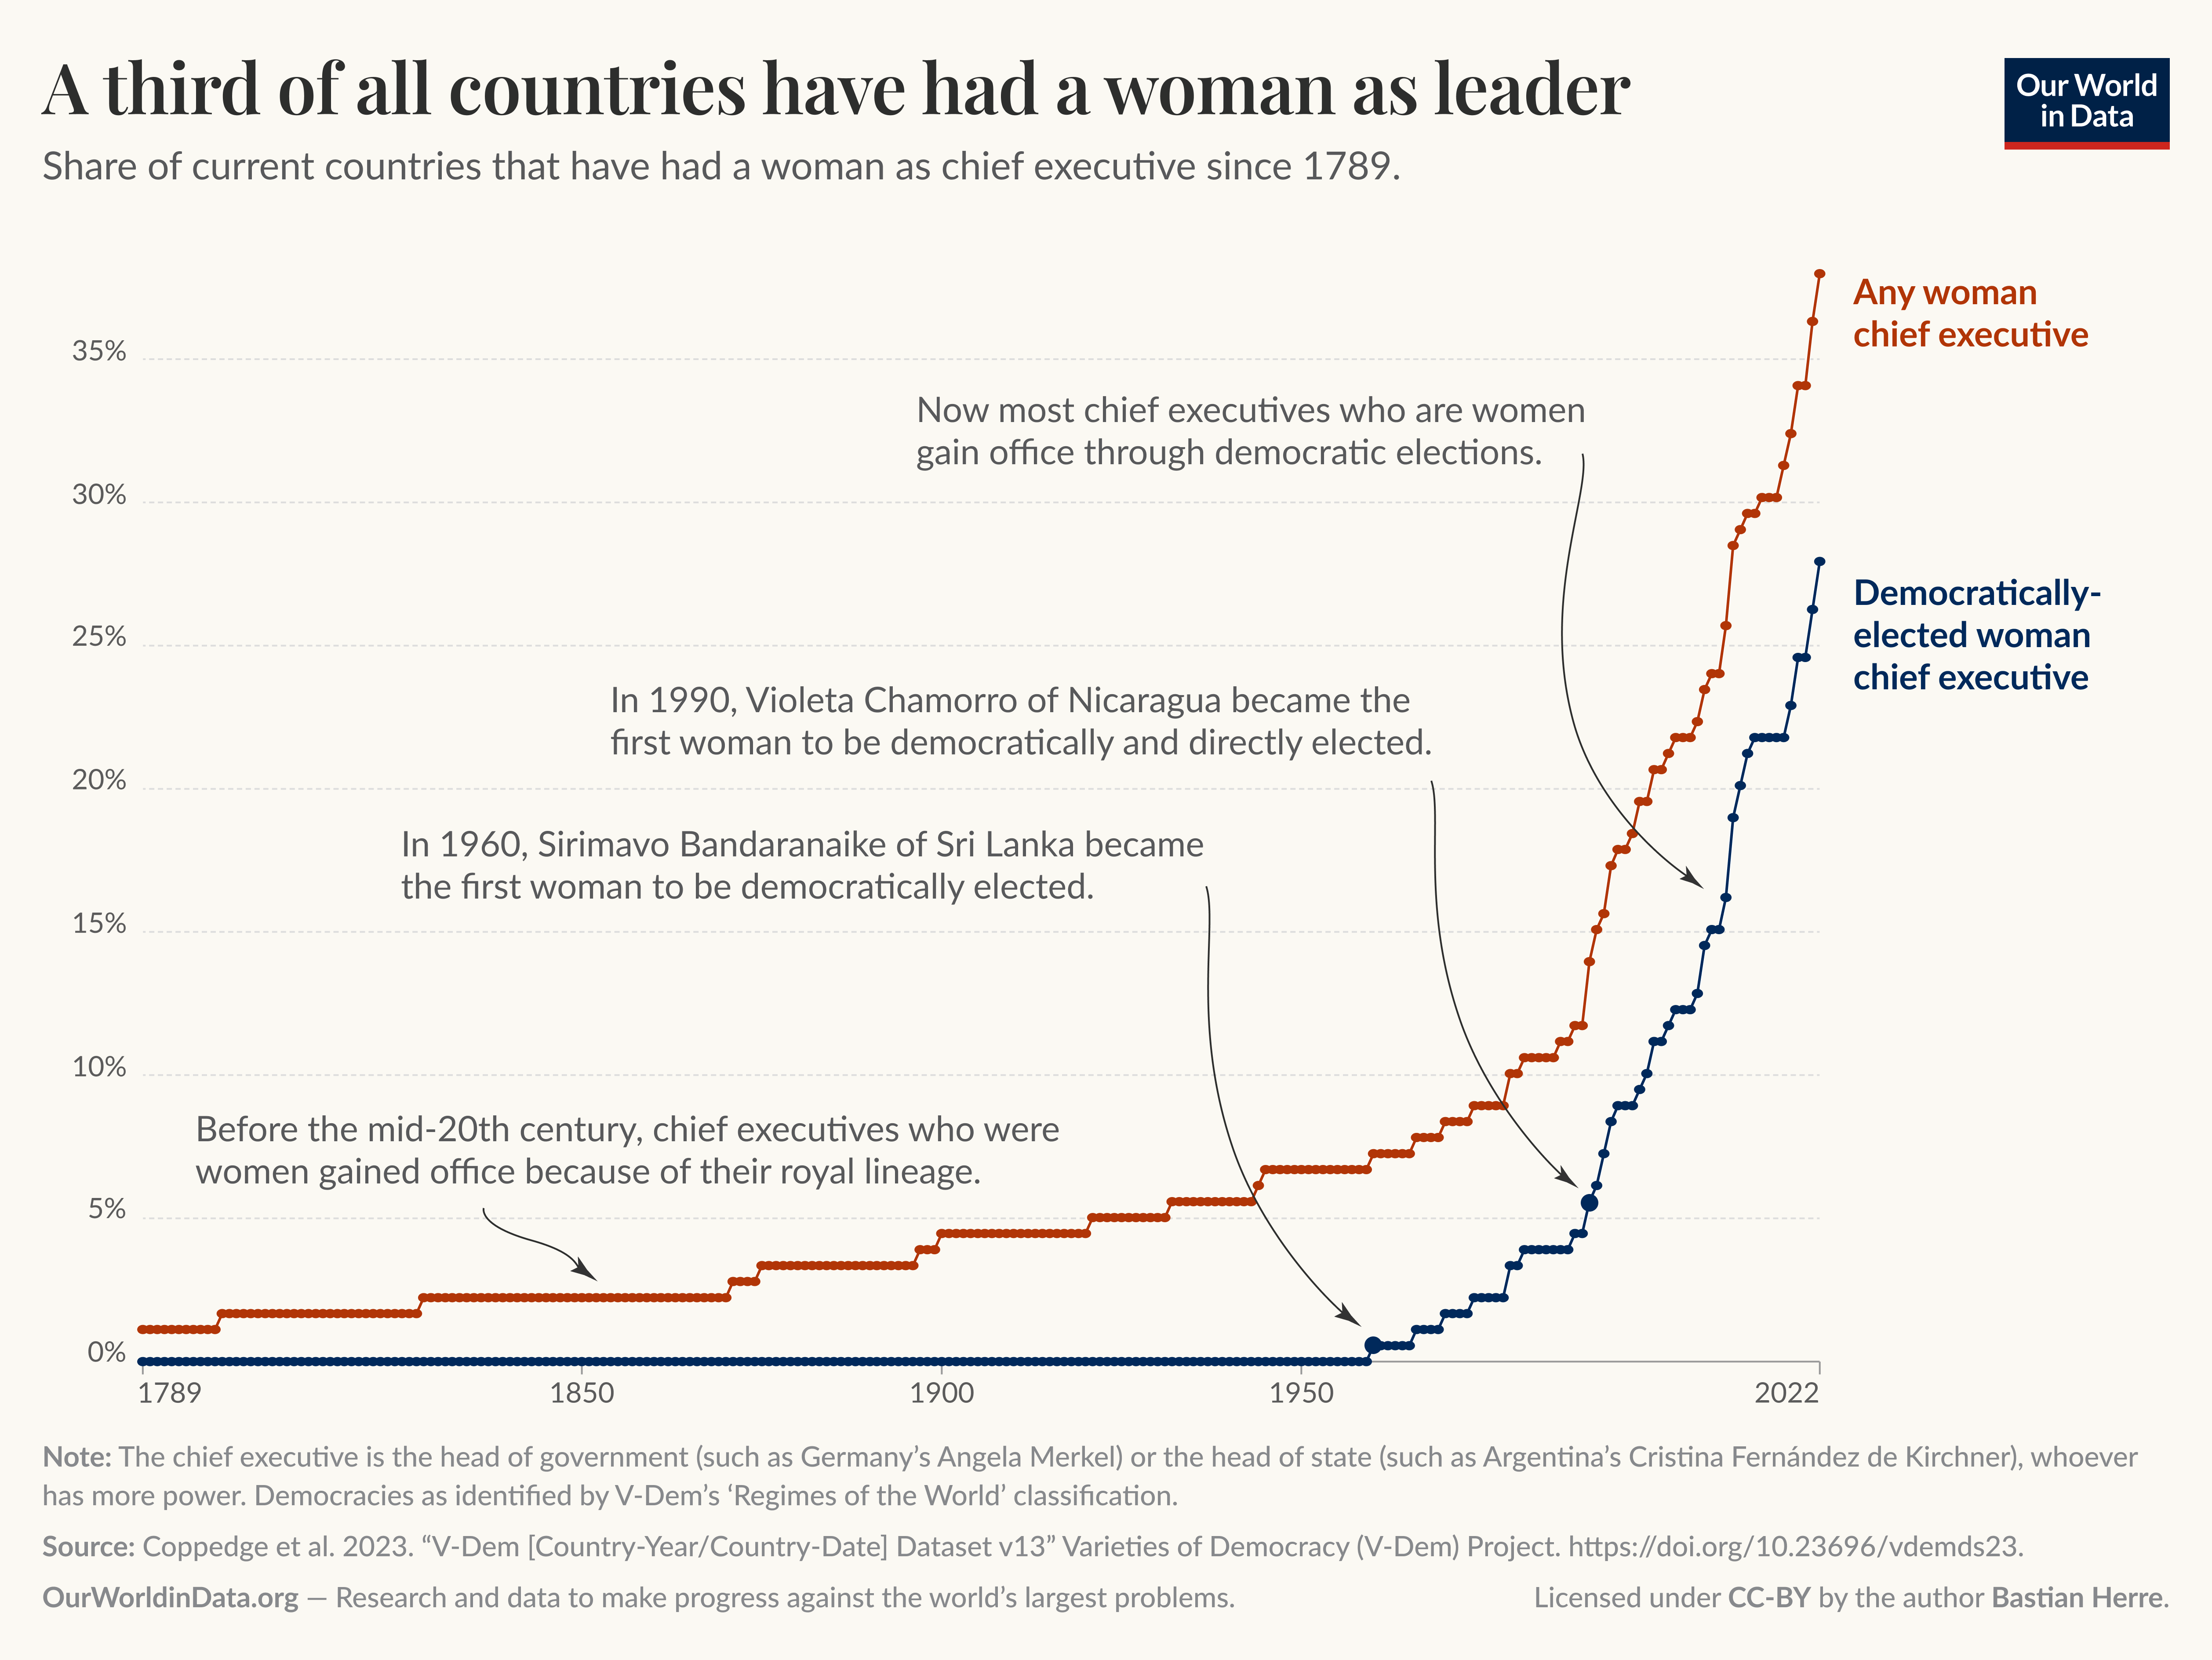 نمودار خطی نشان می‌دهد که سهم کشورهایی که تا به حال یک زن را به عنوان مدیر اجرایی داشته‌اند، از اواسط قرن بیستم بسیار افزایش یافته است، که توسط مدیران ارشد زنان منتخب دموکراتیک هدایت می‌شود.